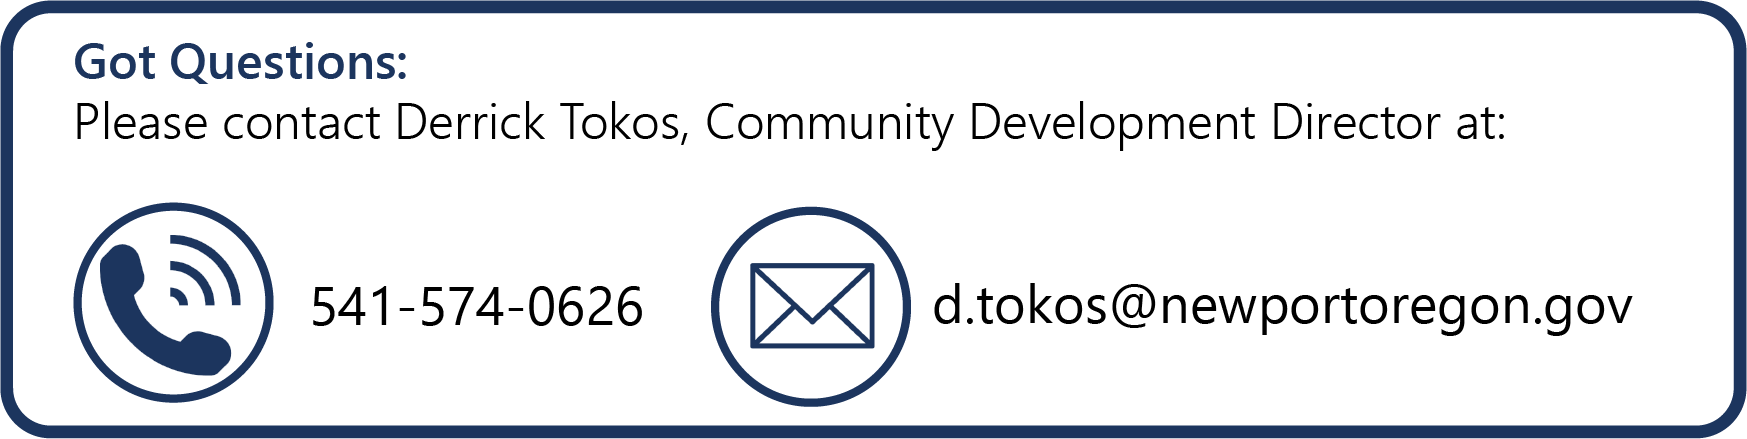 Got Questions -Email Derrick Tokos